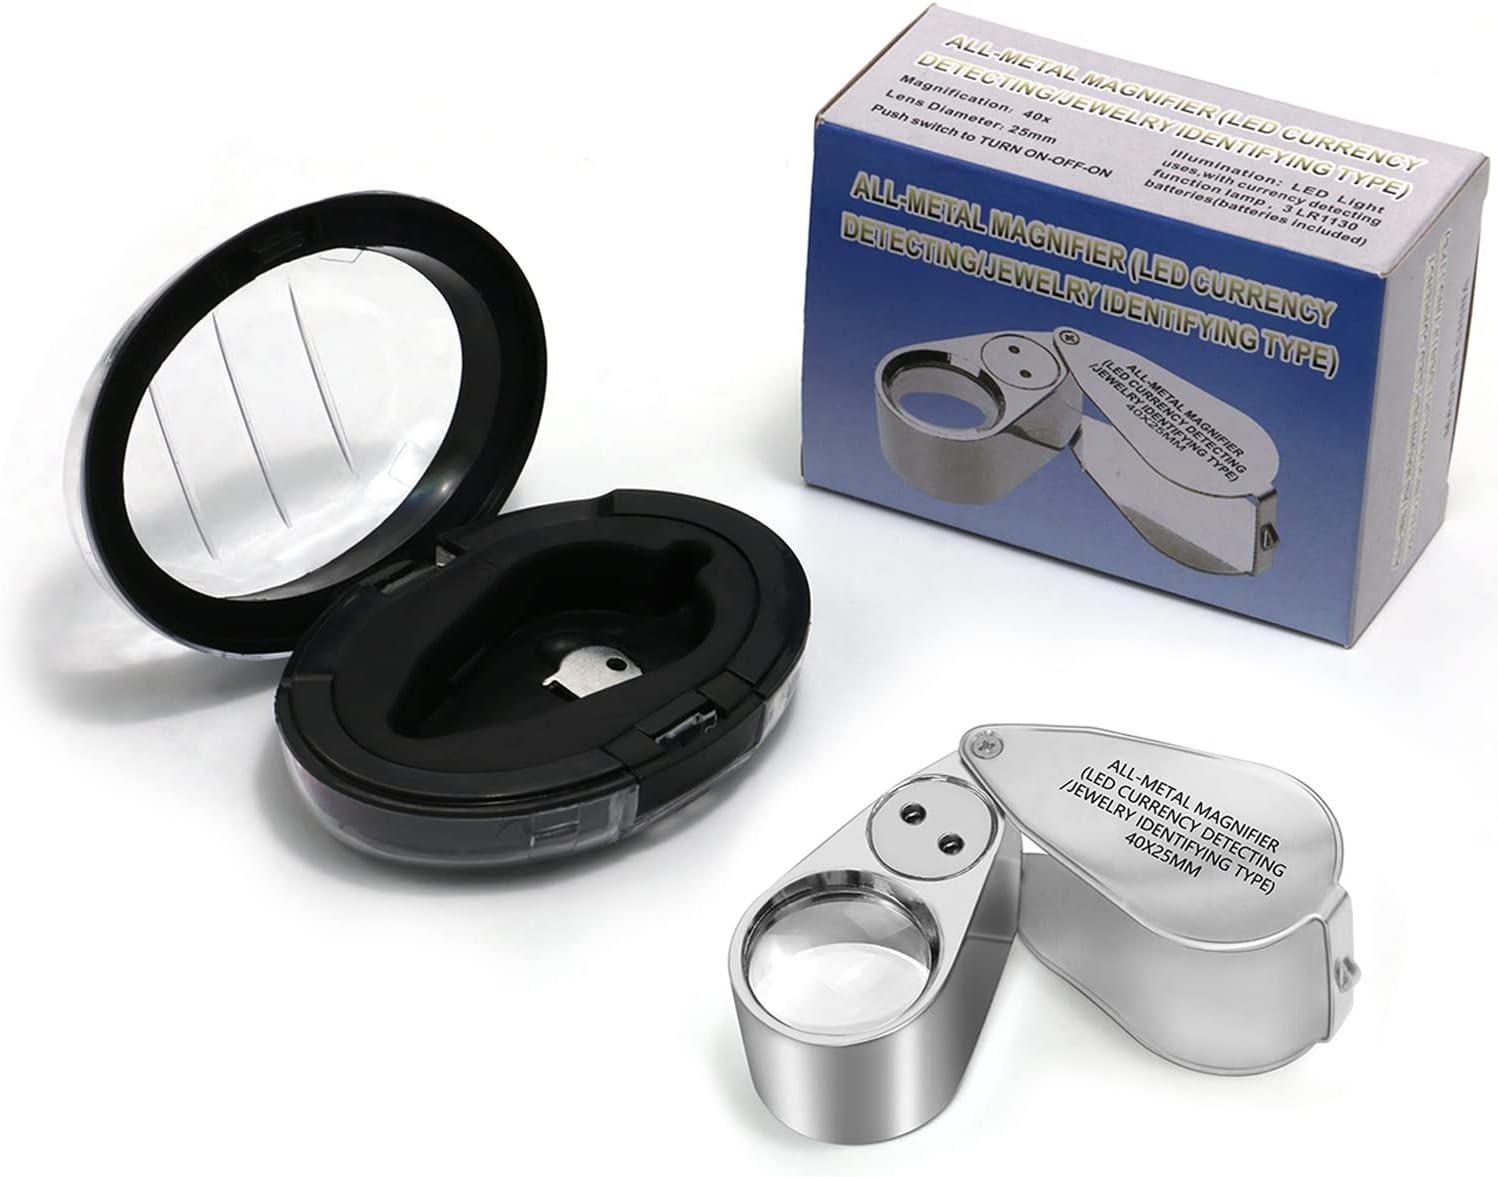 40X Full Metal Illuminated Jewelry Loop Magnifier, XYK Pocket